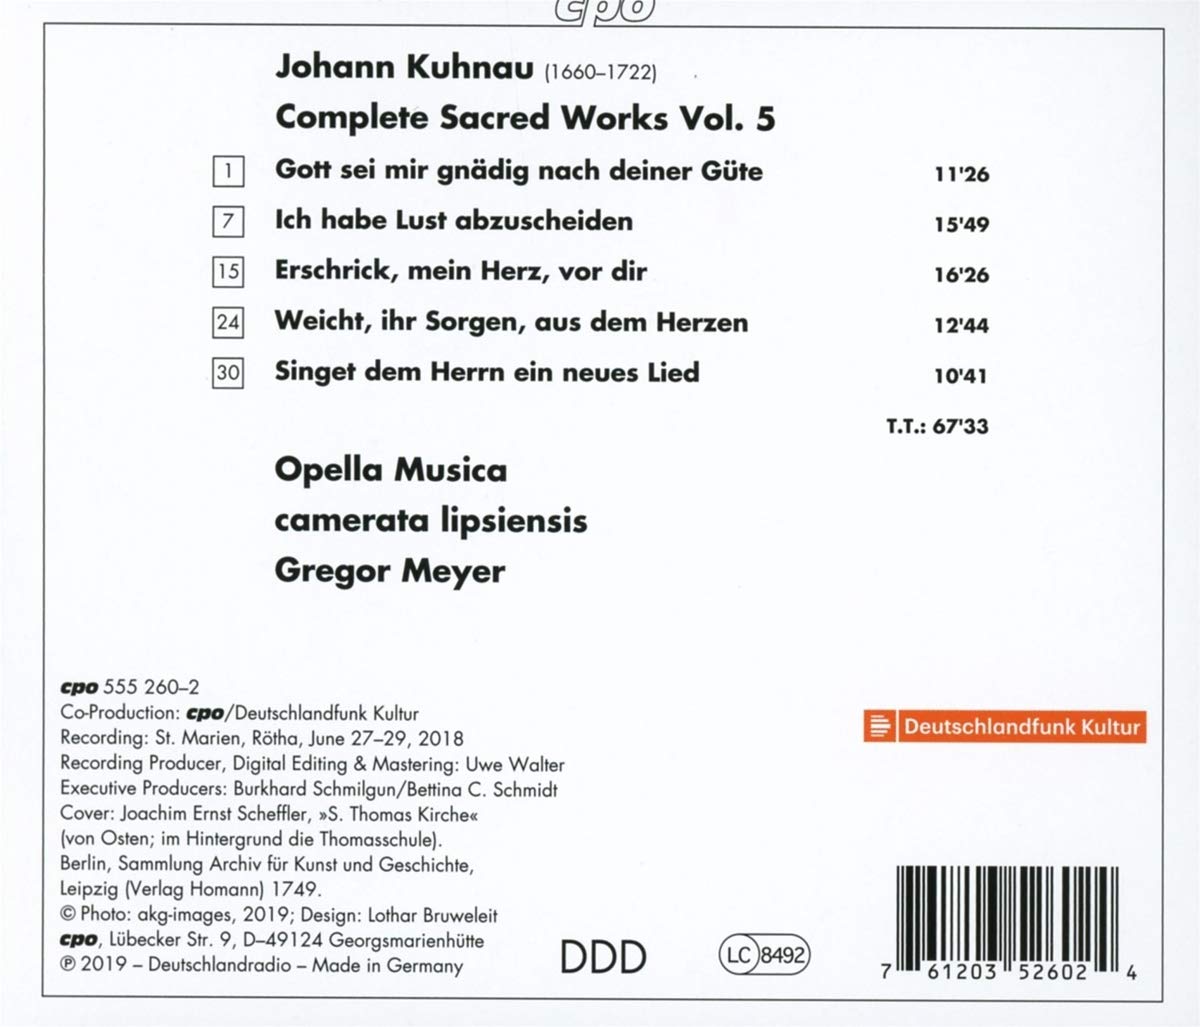 Gregor Meyer 요한 쿠나우: 종교음악 작품 5집 (Johann Kuhnau: Complete Sacred Works, Vol. 5)